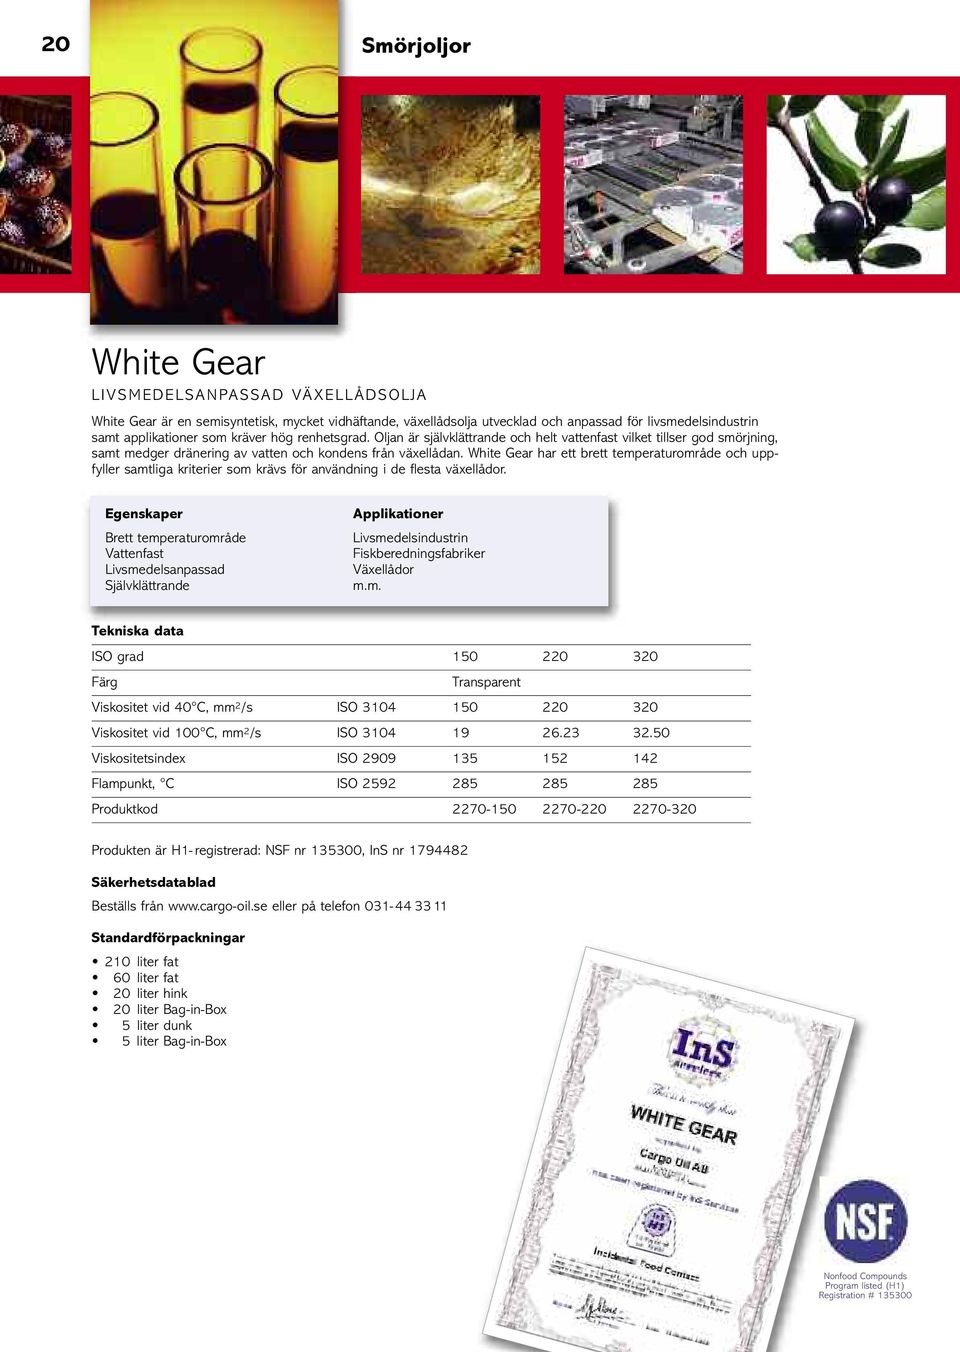 White Gear har ett brett temperaturområde och uppfyller samtliga kriterier som krävs för användning i de flesta växellådor.